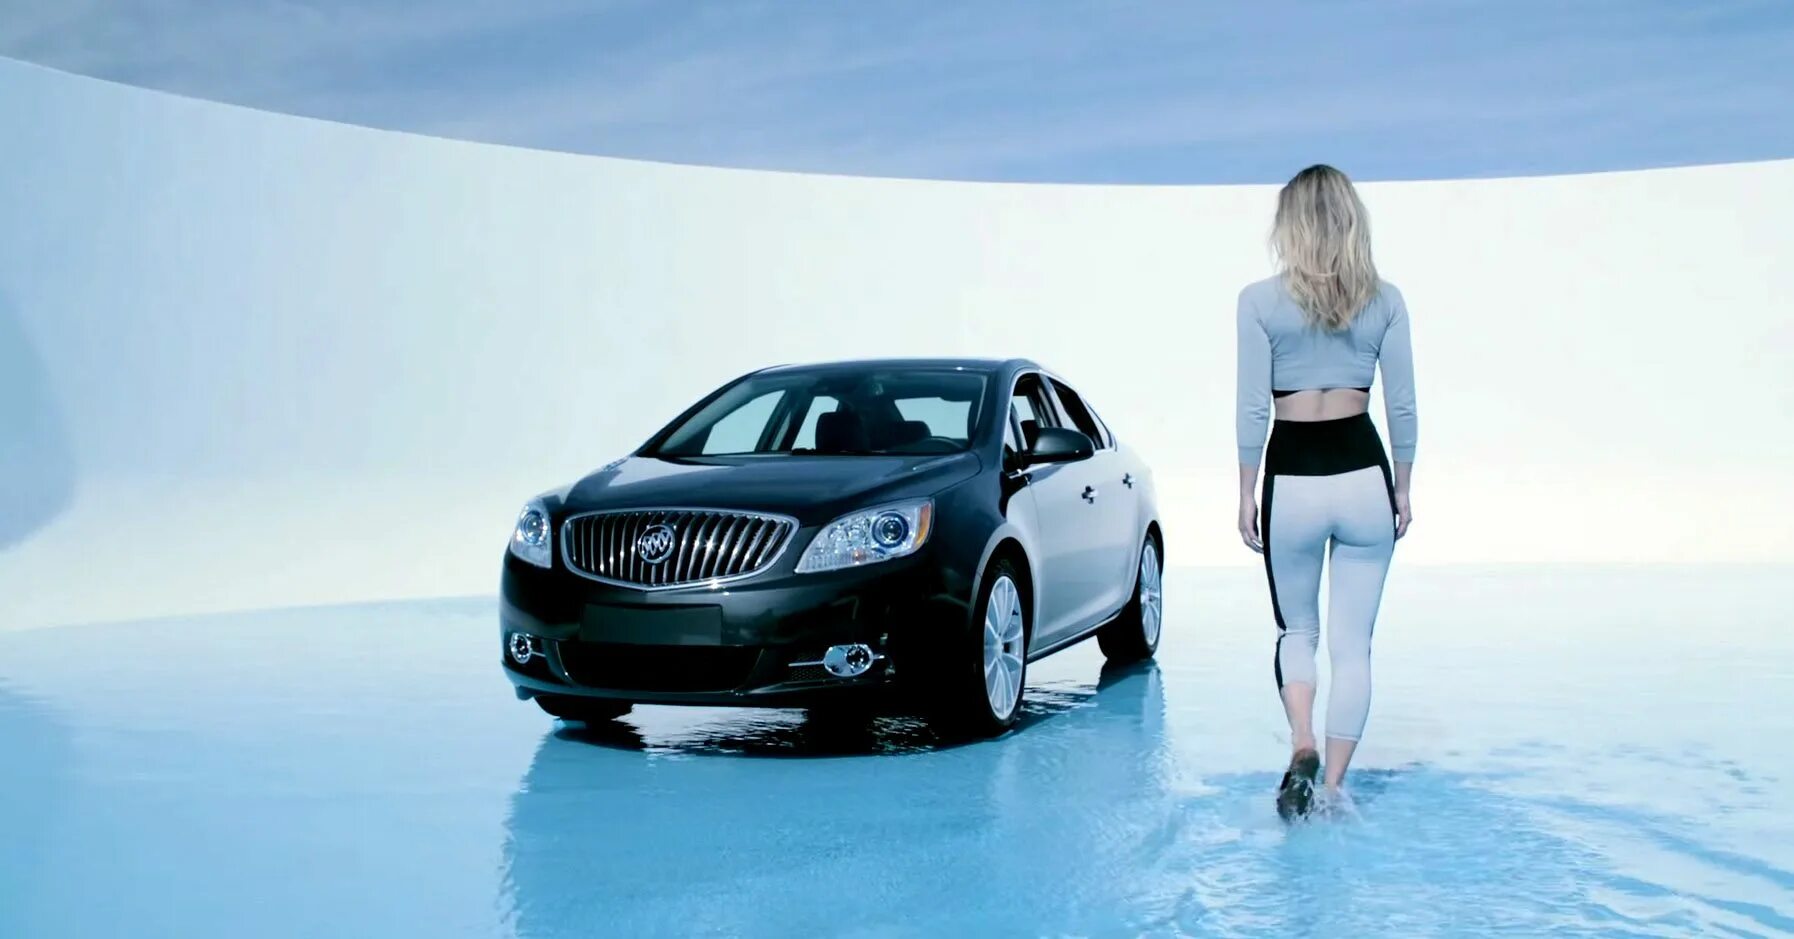 Страшная реклама авто. Авто показы рекламы. Реклама автомобилей видео. Лагуну реклама машины. Покажи автомобили из рекламы.